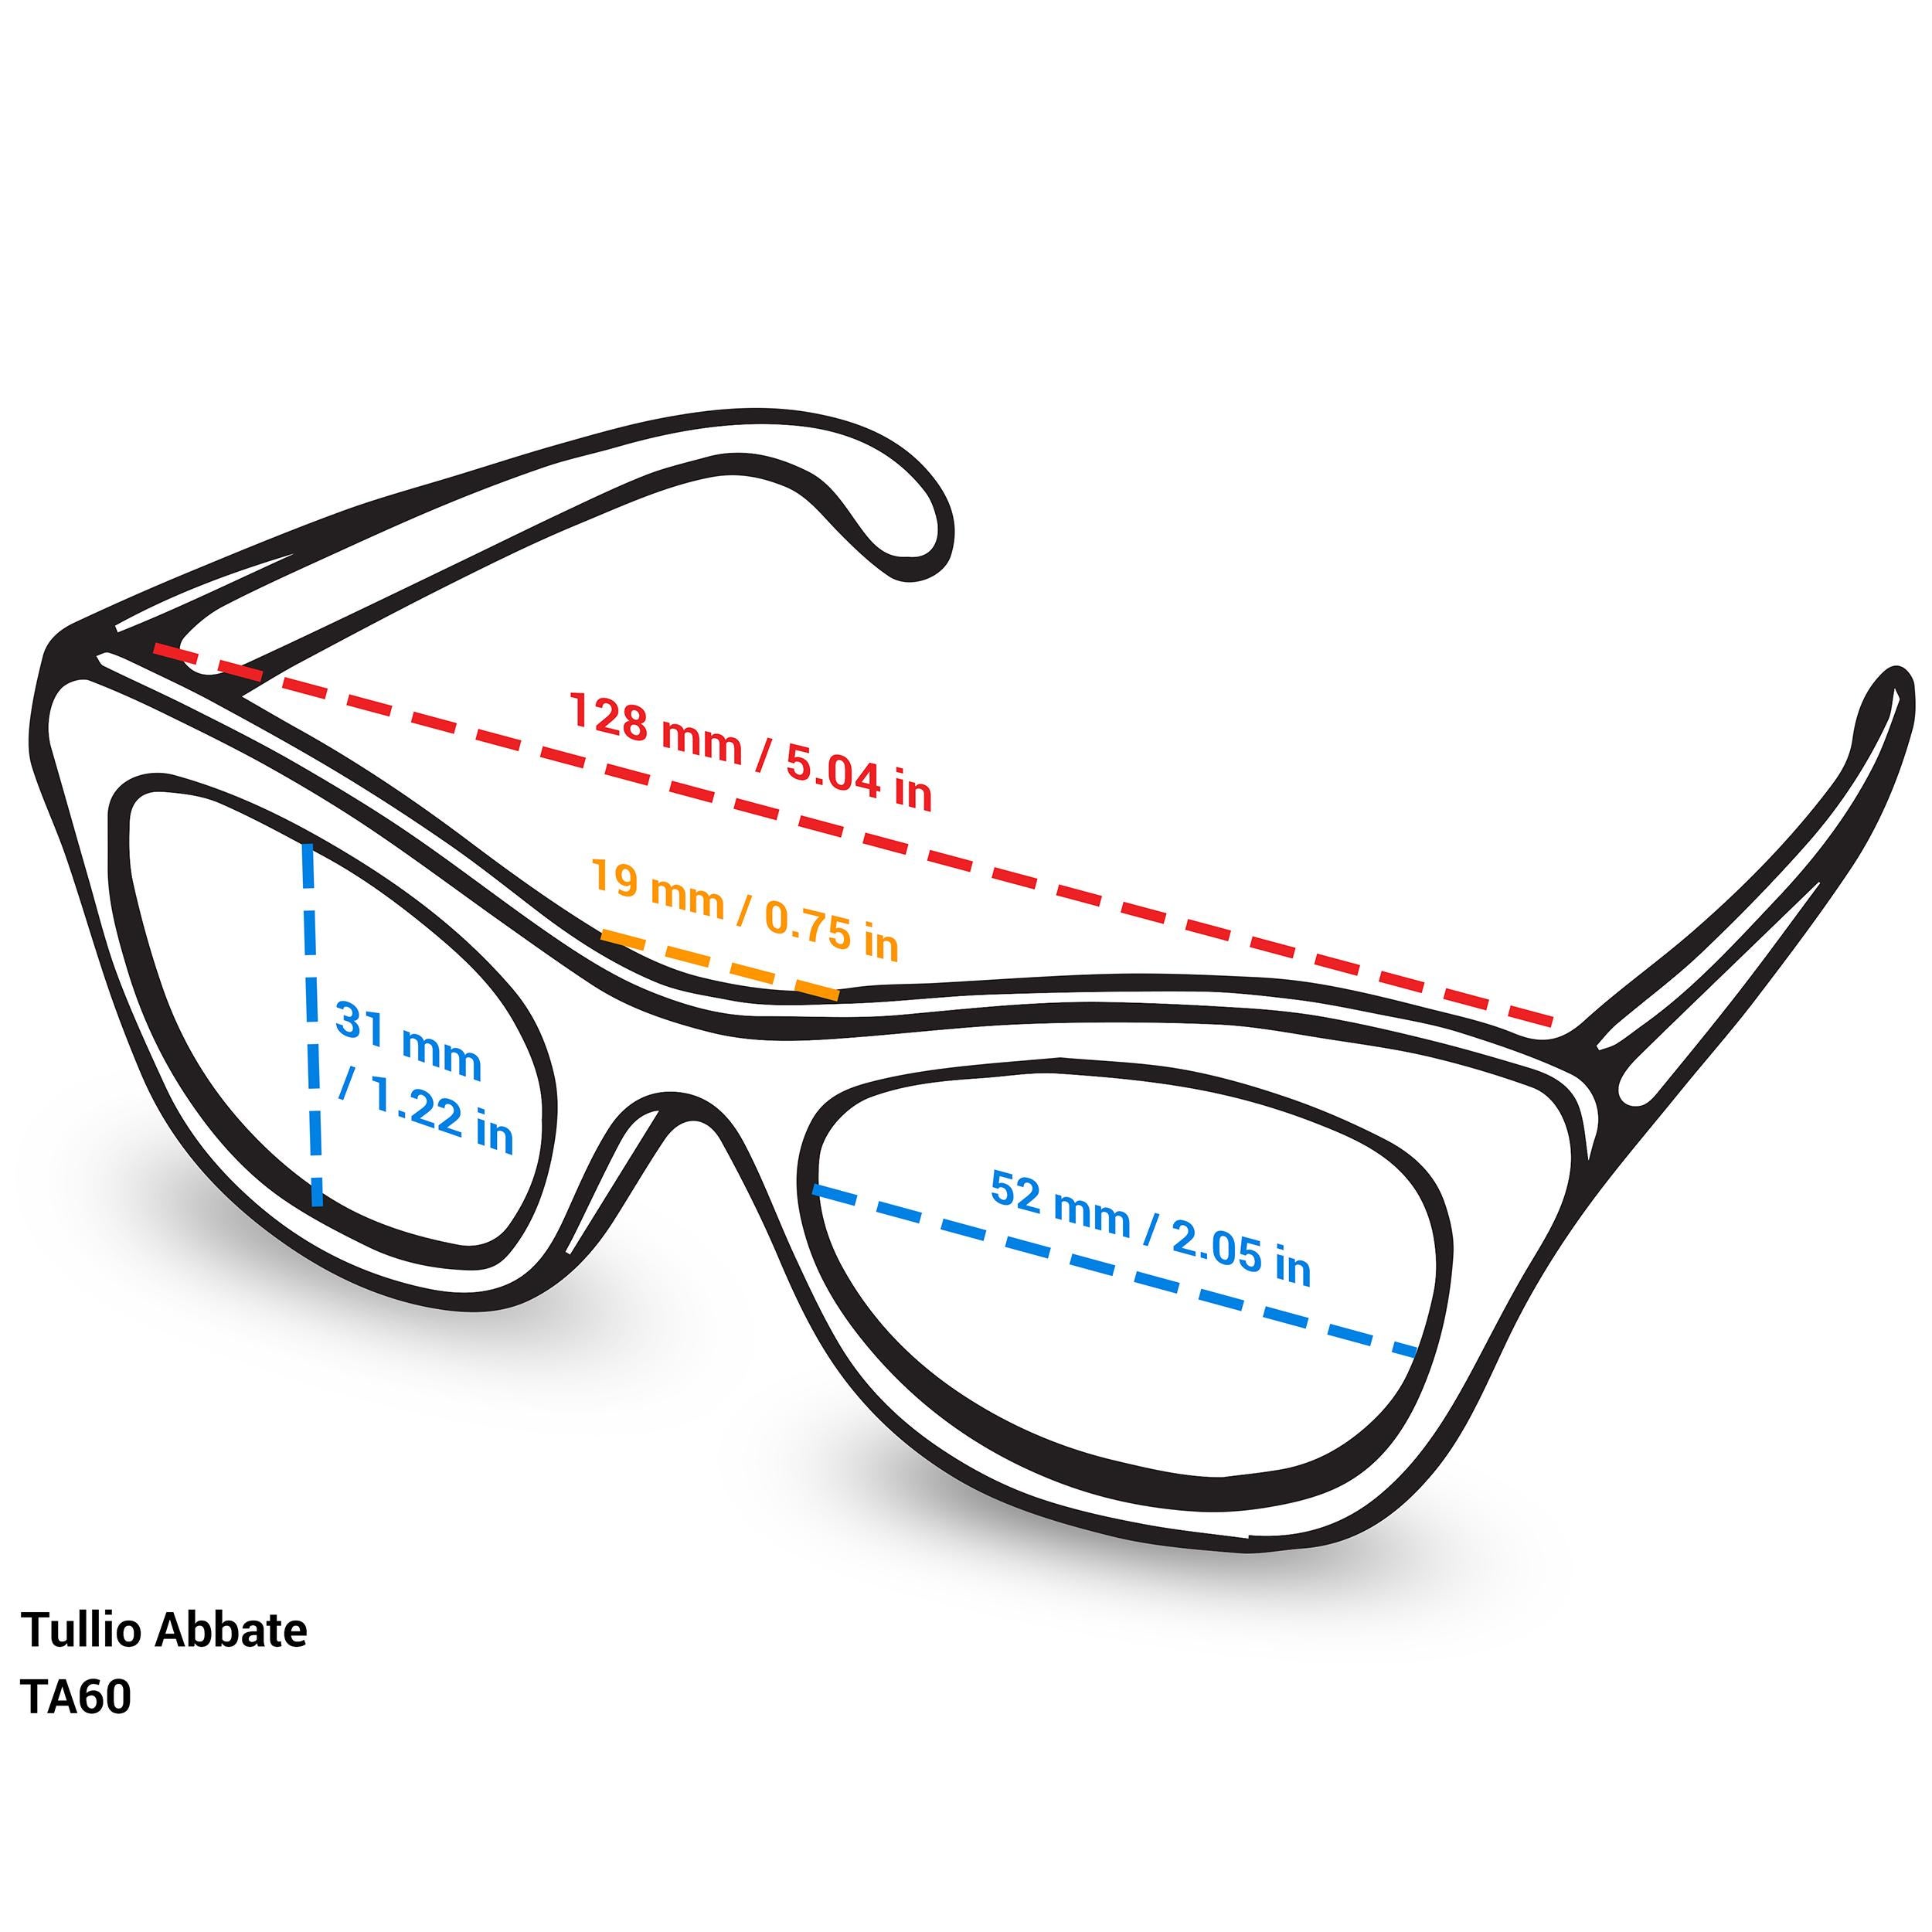 Tullio Abbate Aviator Sunglasses In New Condition For Sale In Santa Clarita, CA